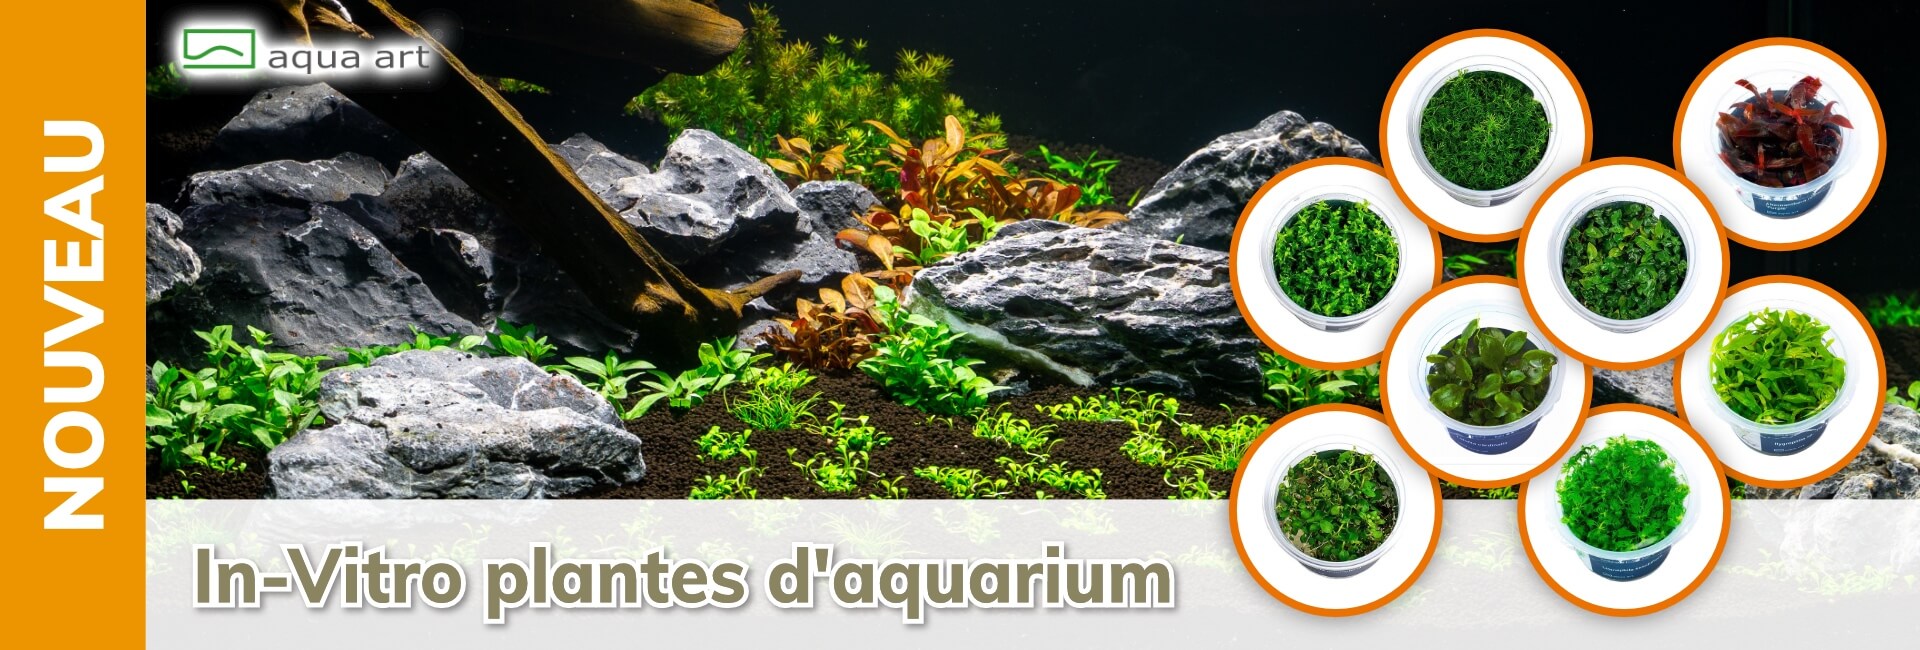 Aqua Art In-Vitro Plantes d’aquarium